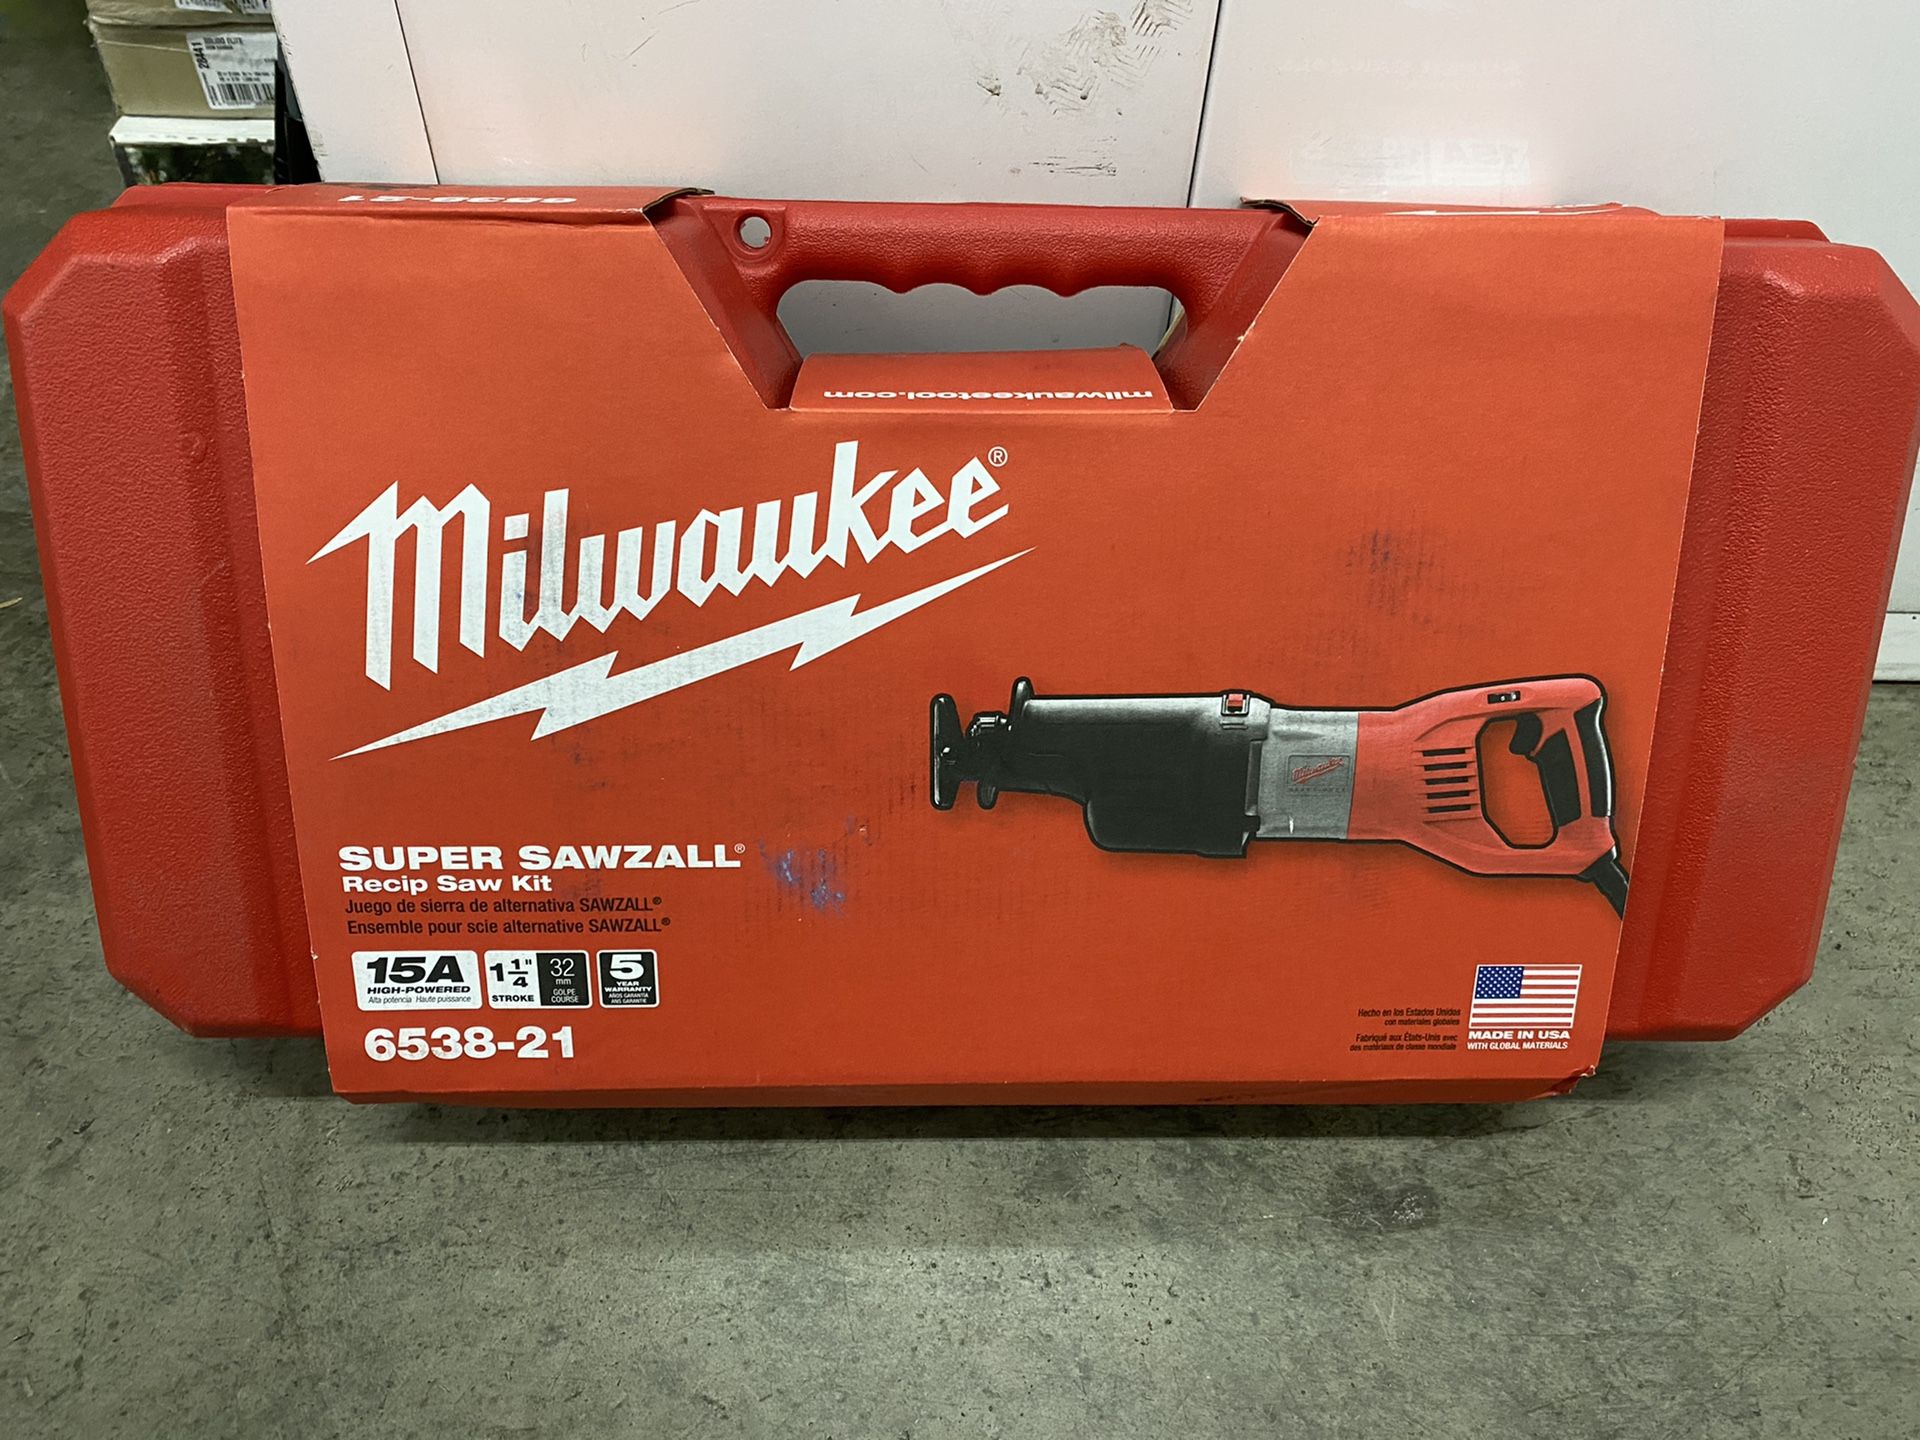 Milwaukee super sawzall